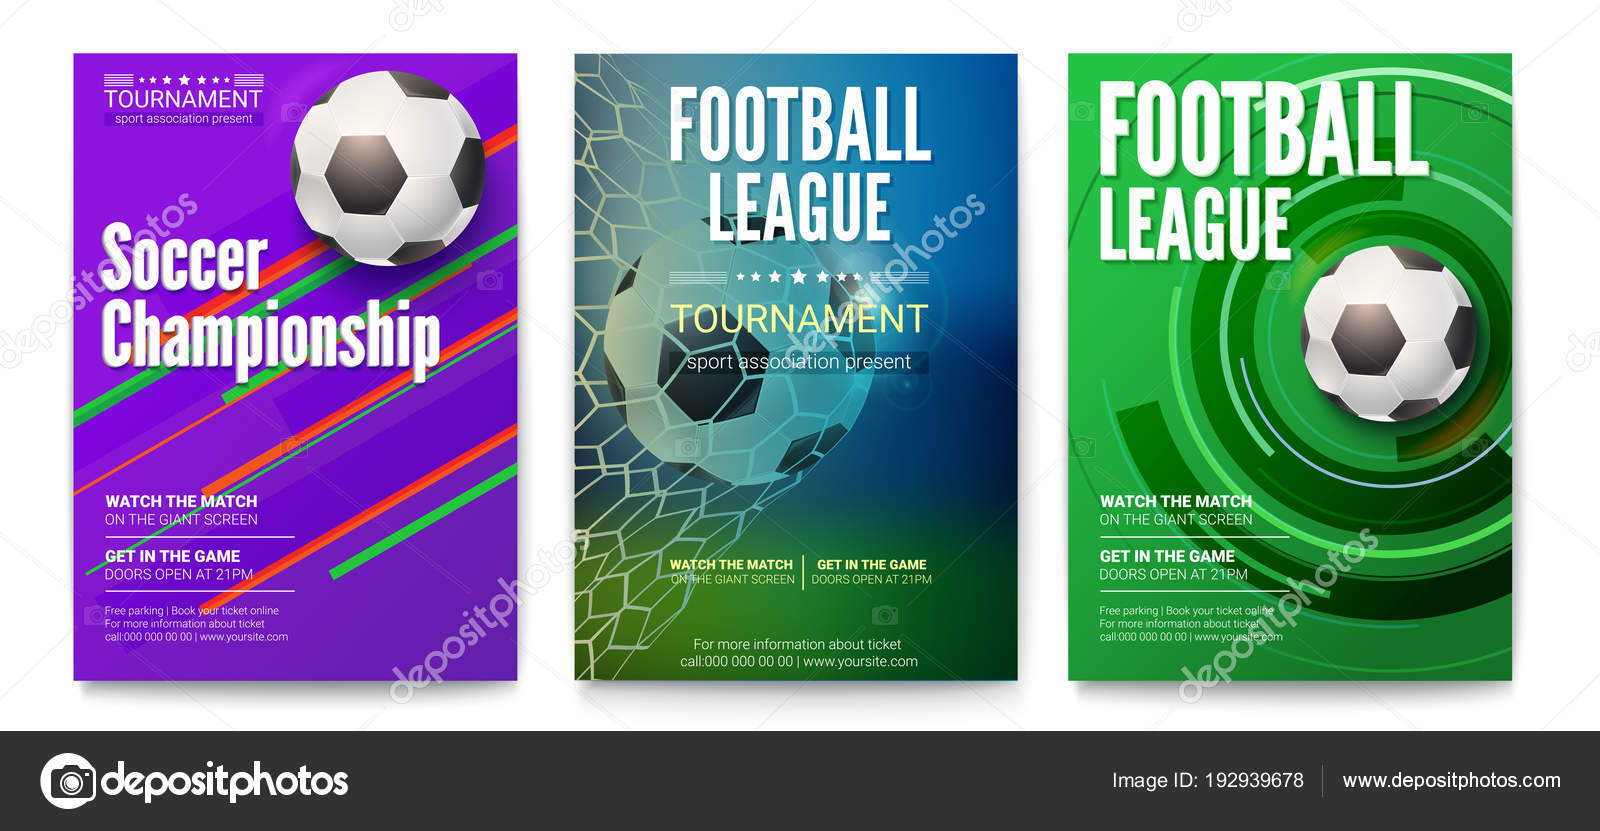 Cartaz de futebol ou futebol com design de texto. Modelo para